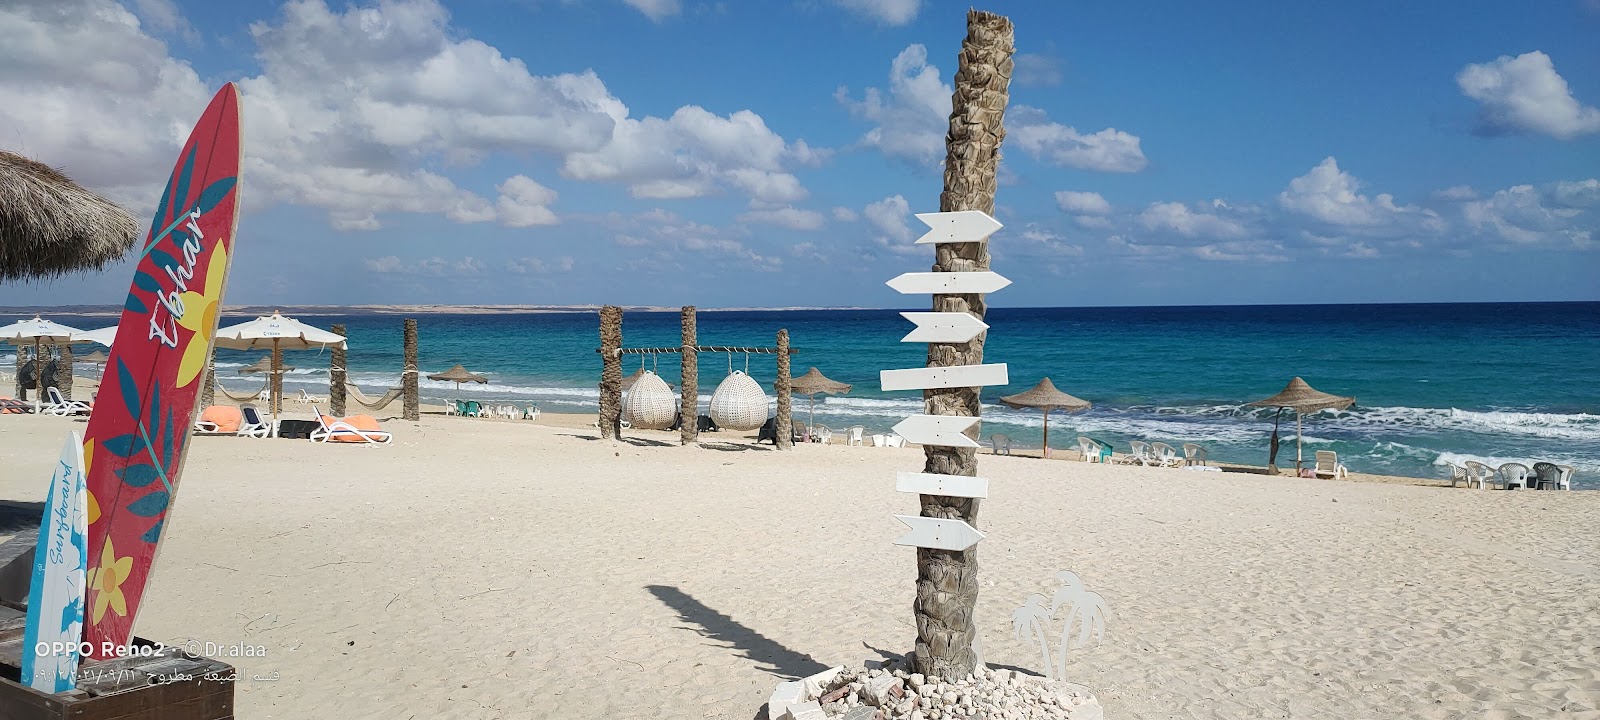 Al Rawan Resort Beach'in fotoğrafı parlak kum yüzey ile